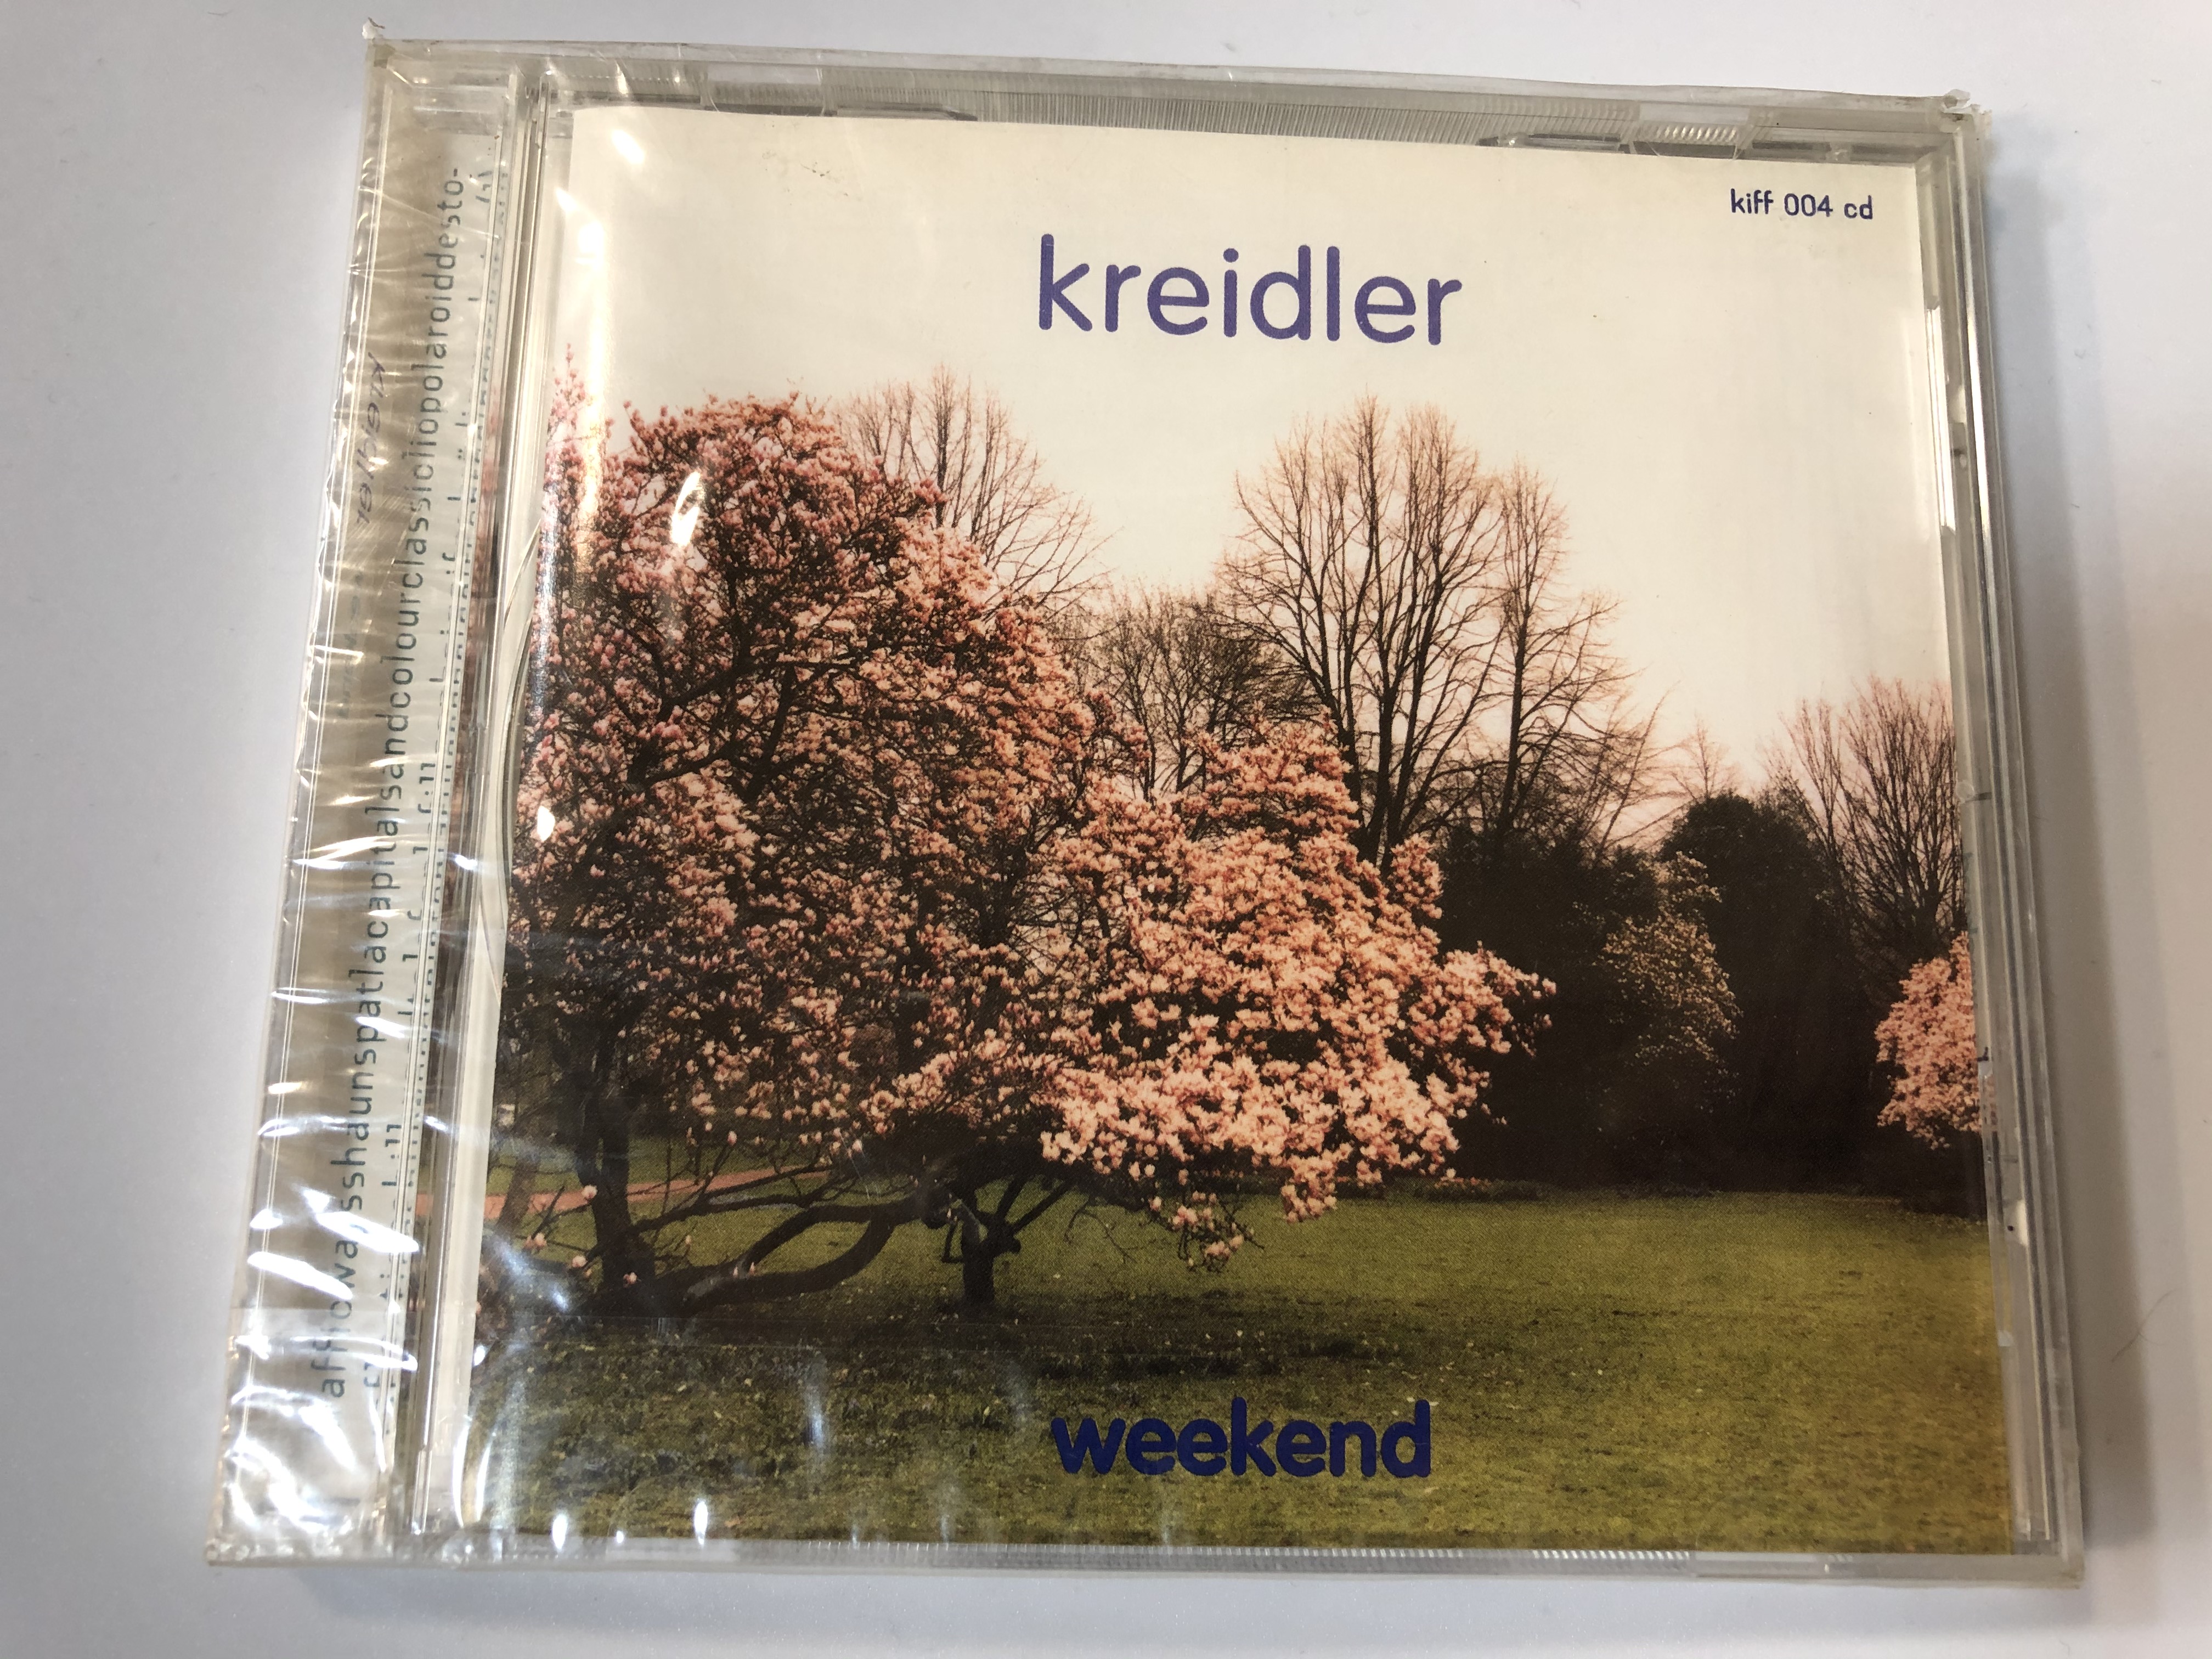 kreidler-weekend-kiff-sm-audio-cd-kiff-004-cd-1-.jpg